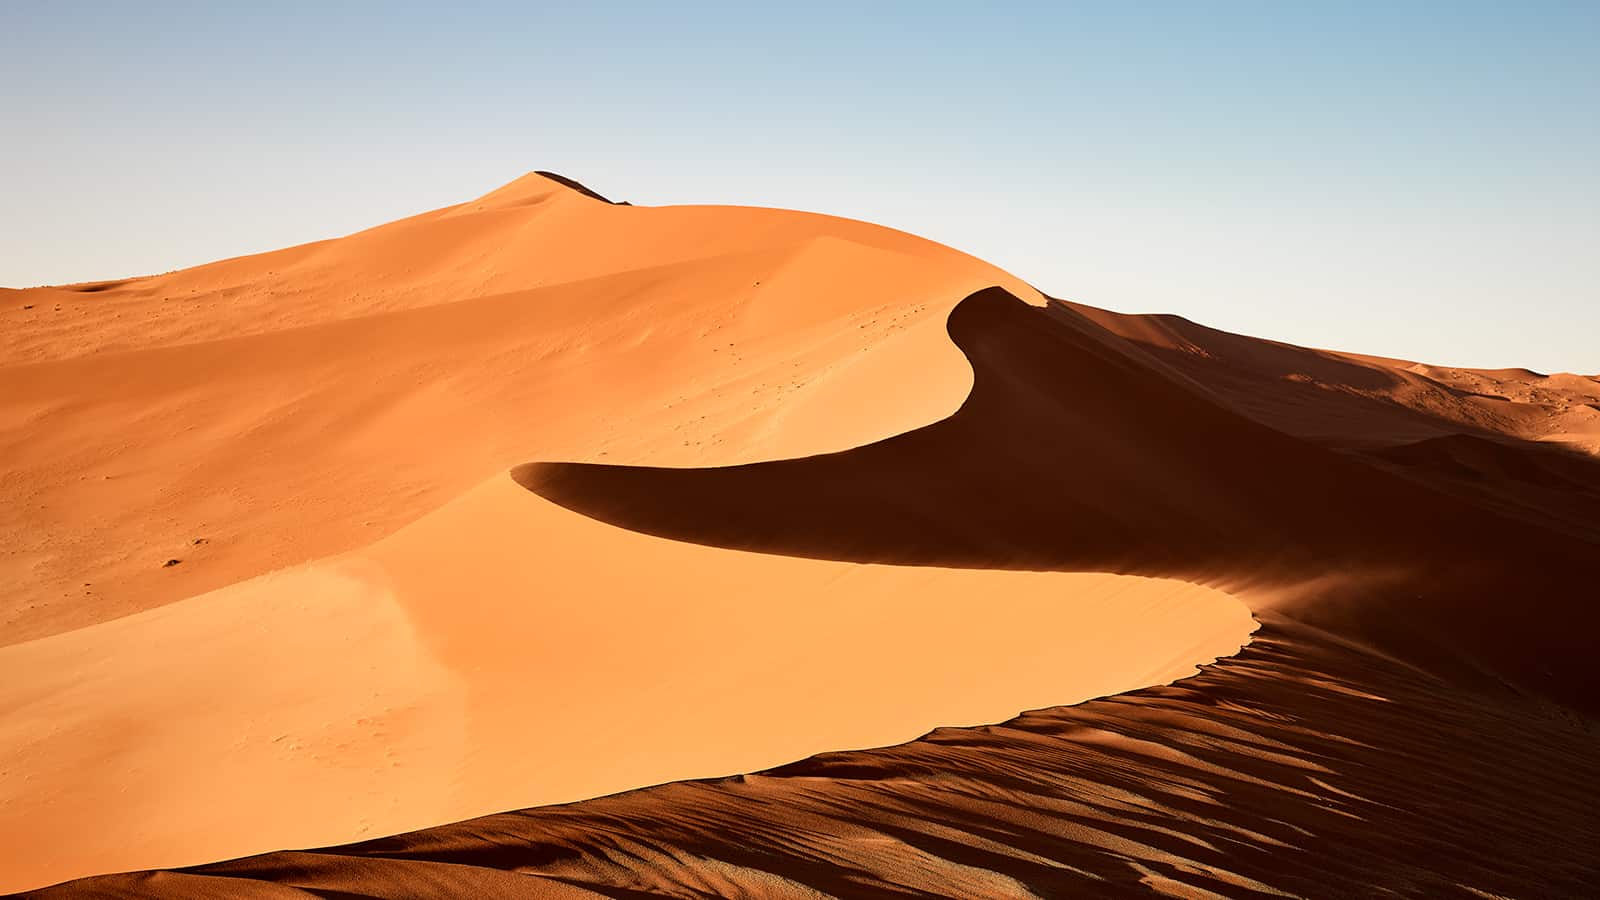 "Dune 45" hohe orange-goldenen Sanddünen im Hintergrund ein strahlend blauer Himmel